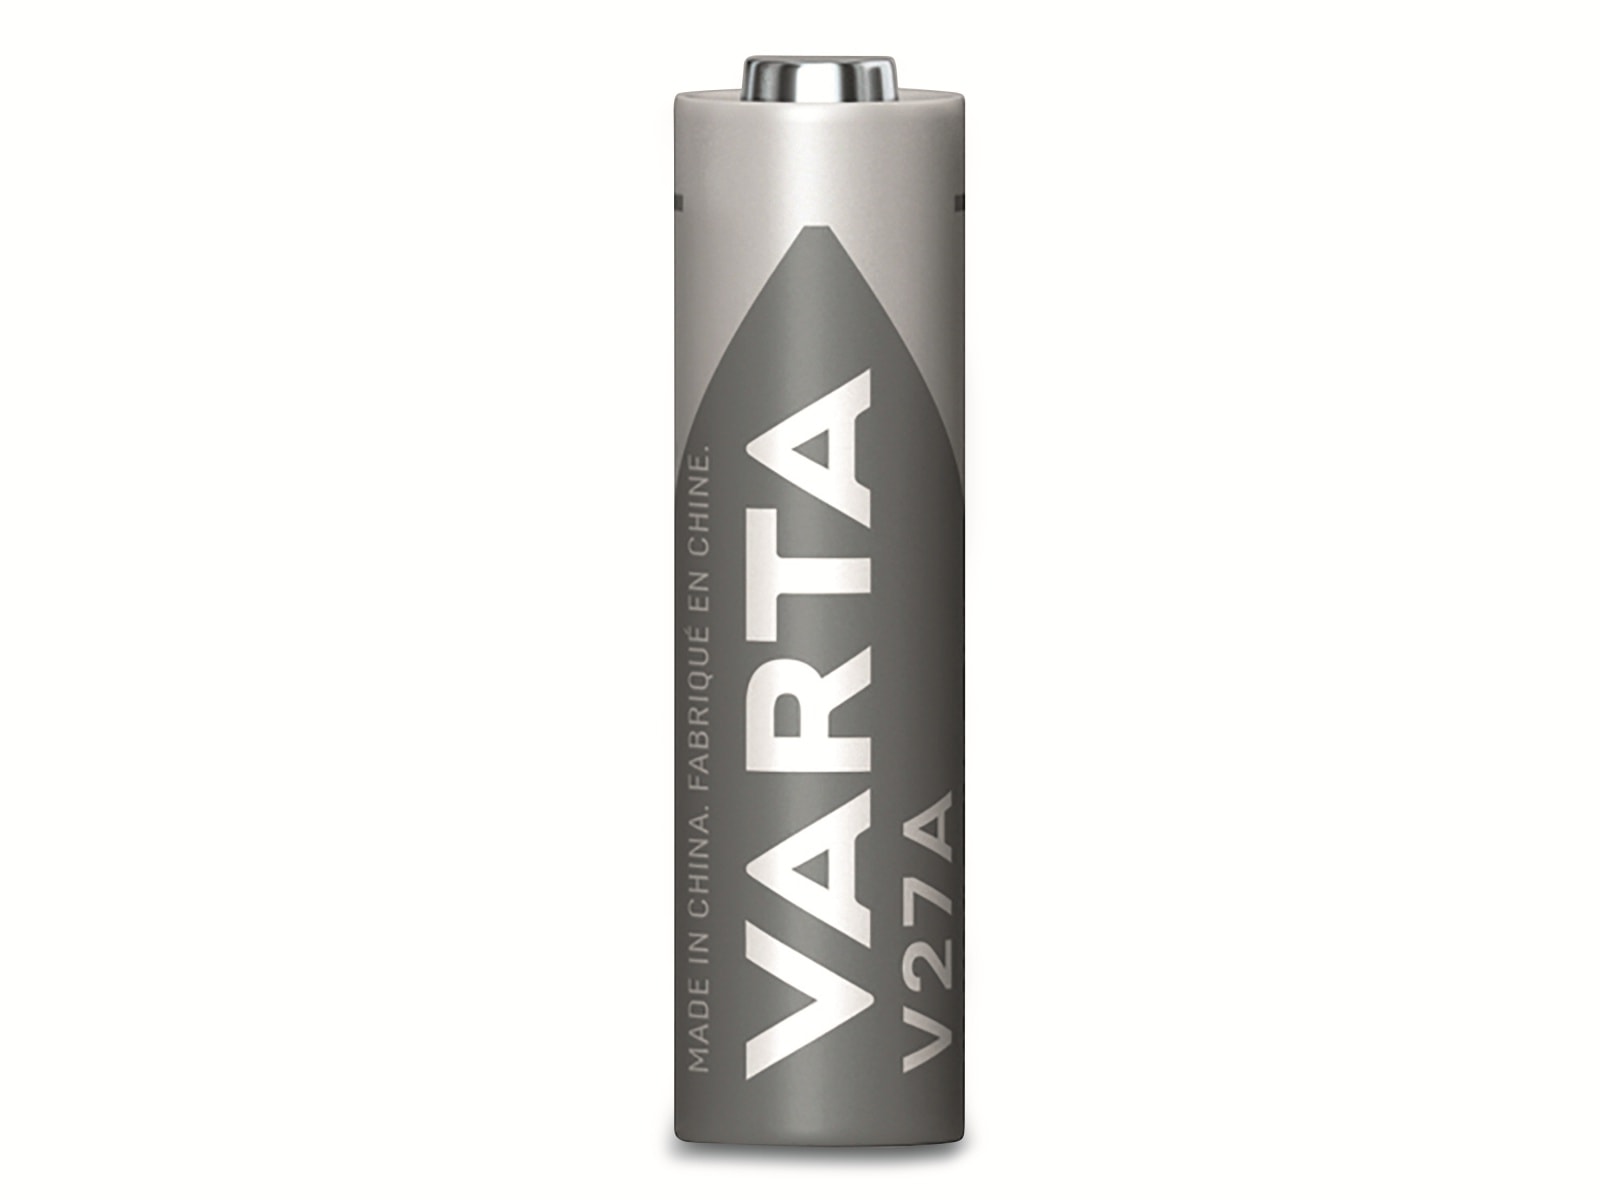 VARTA Batterie Alkaline, LR27, V27A, 12V, Electronics, 1 Stück